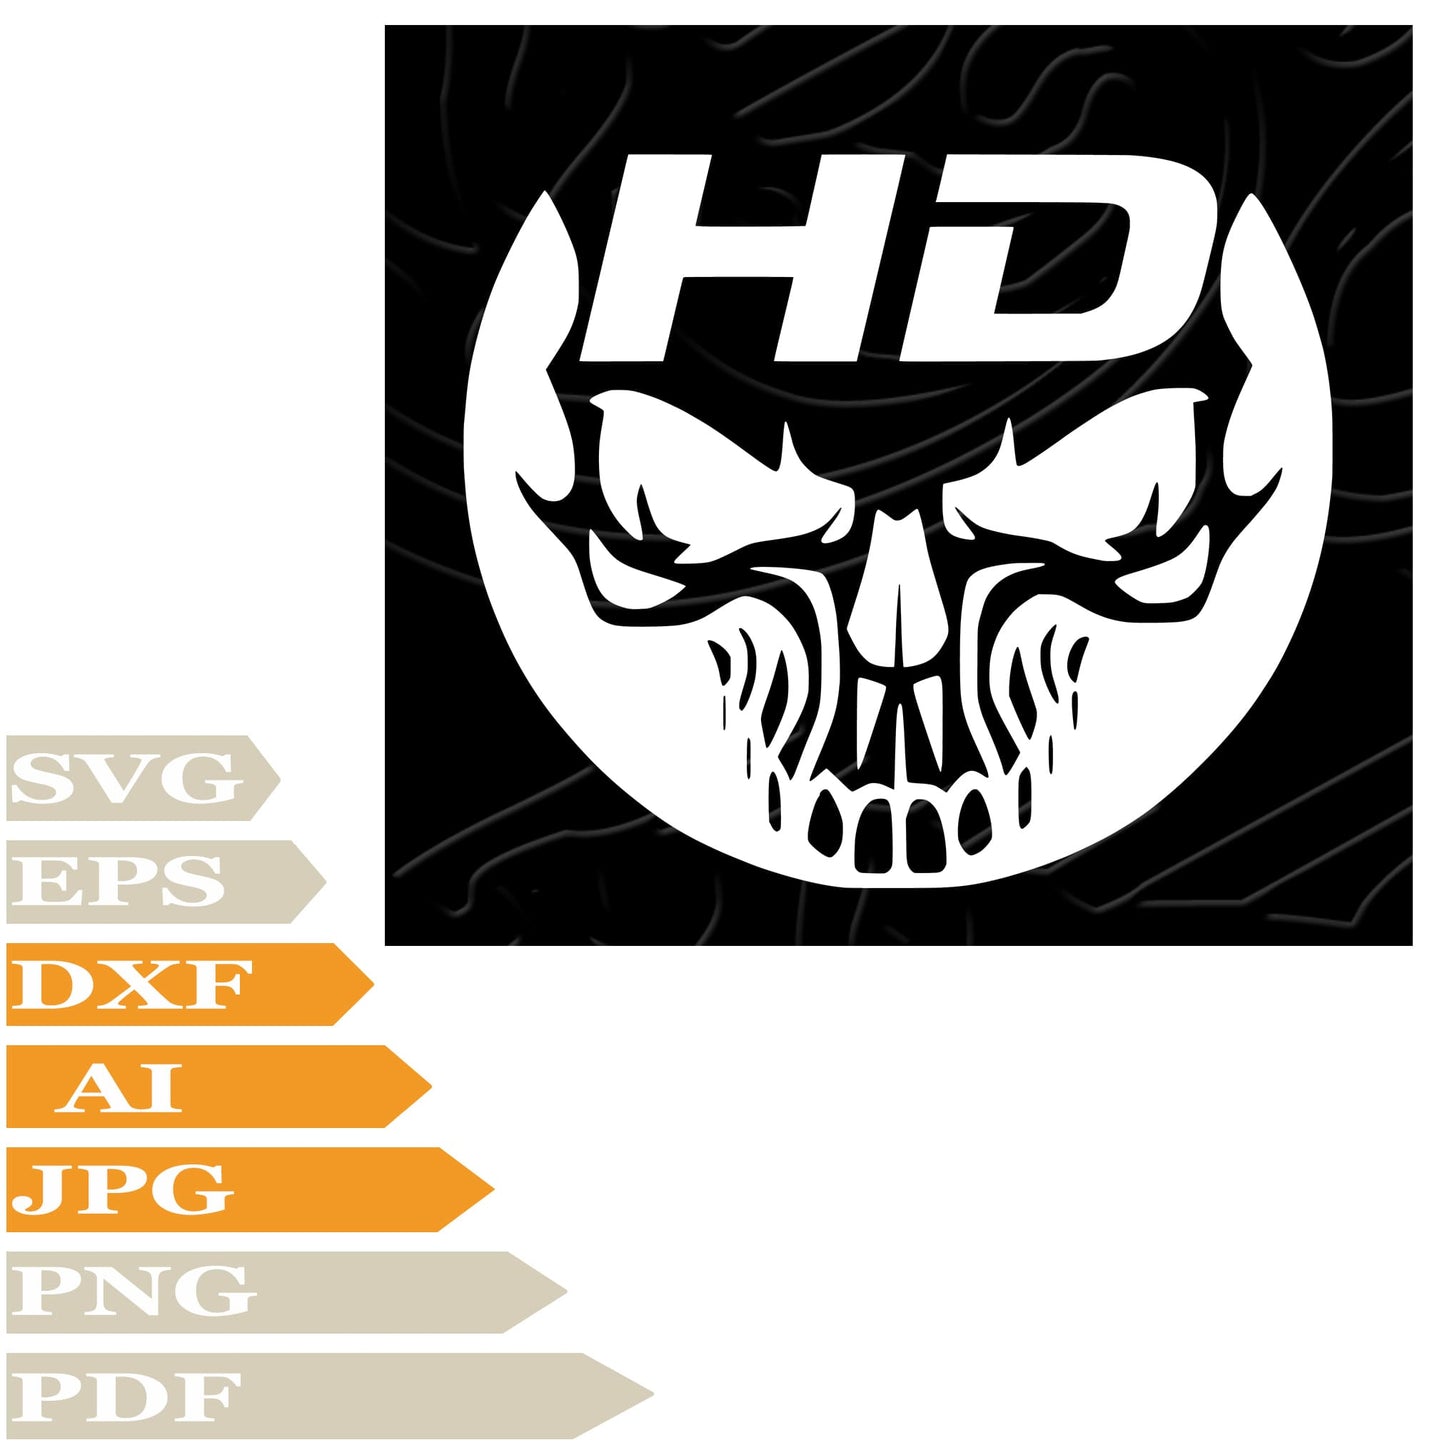 Harley Davidson ﻿SVG, Skull Harley Davidson Logo SVG Design, Skull PNG, Harley Davidson Vector Graphics, Harley For Cricut, Digital Instant Download, Clip Art, Cut File, T-Shirts, Silhouette